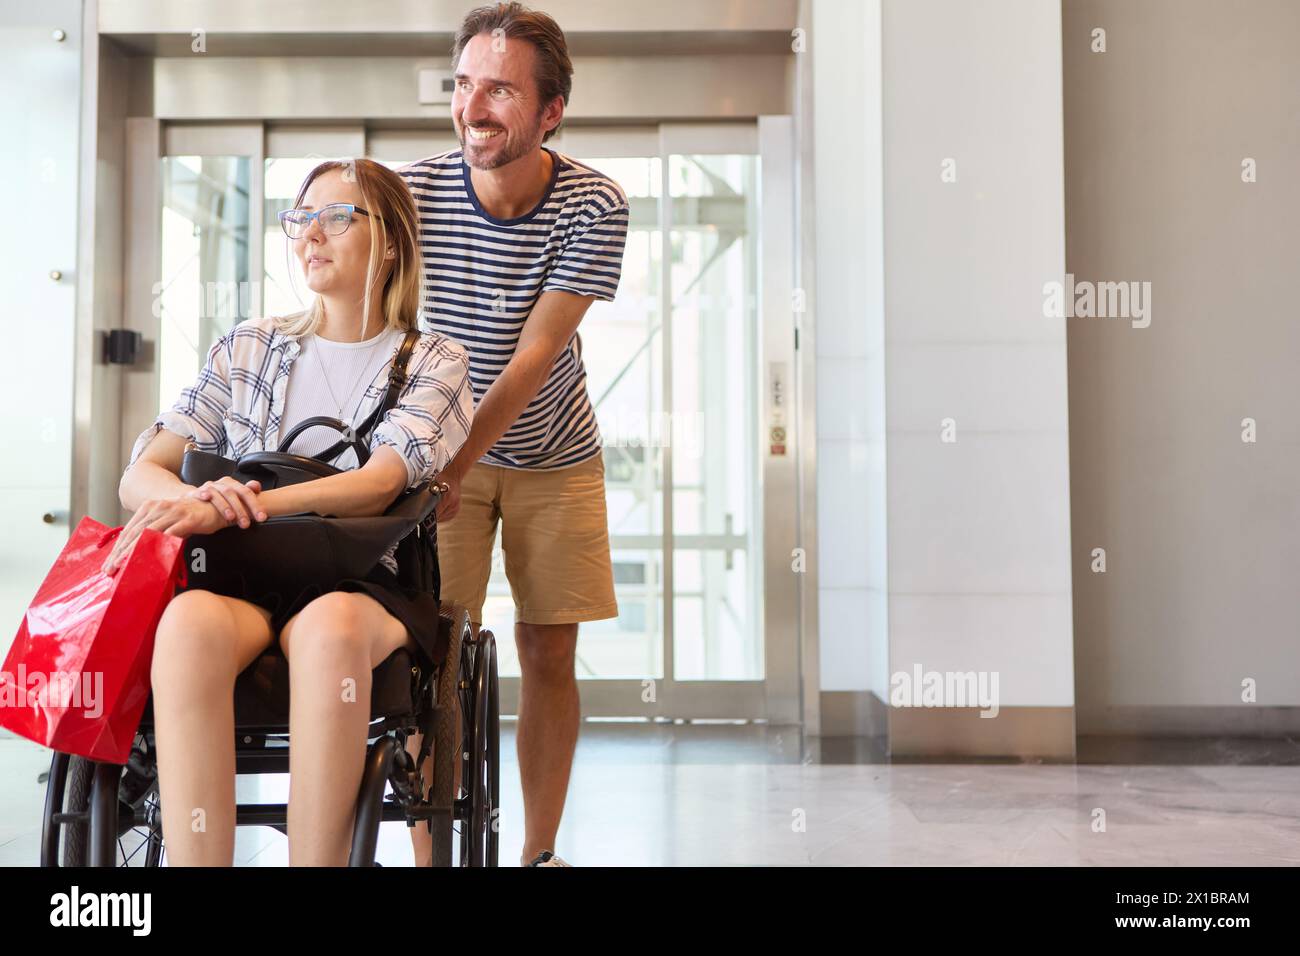 Ein lächelnder junger Mann hilft einer Frau mit einem Rollstuhl und zeigt bei einem Einkaufsausflug in ein Einkaufszentrum die Gesellschaft und Einbeziehung. Stockfoto